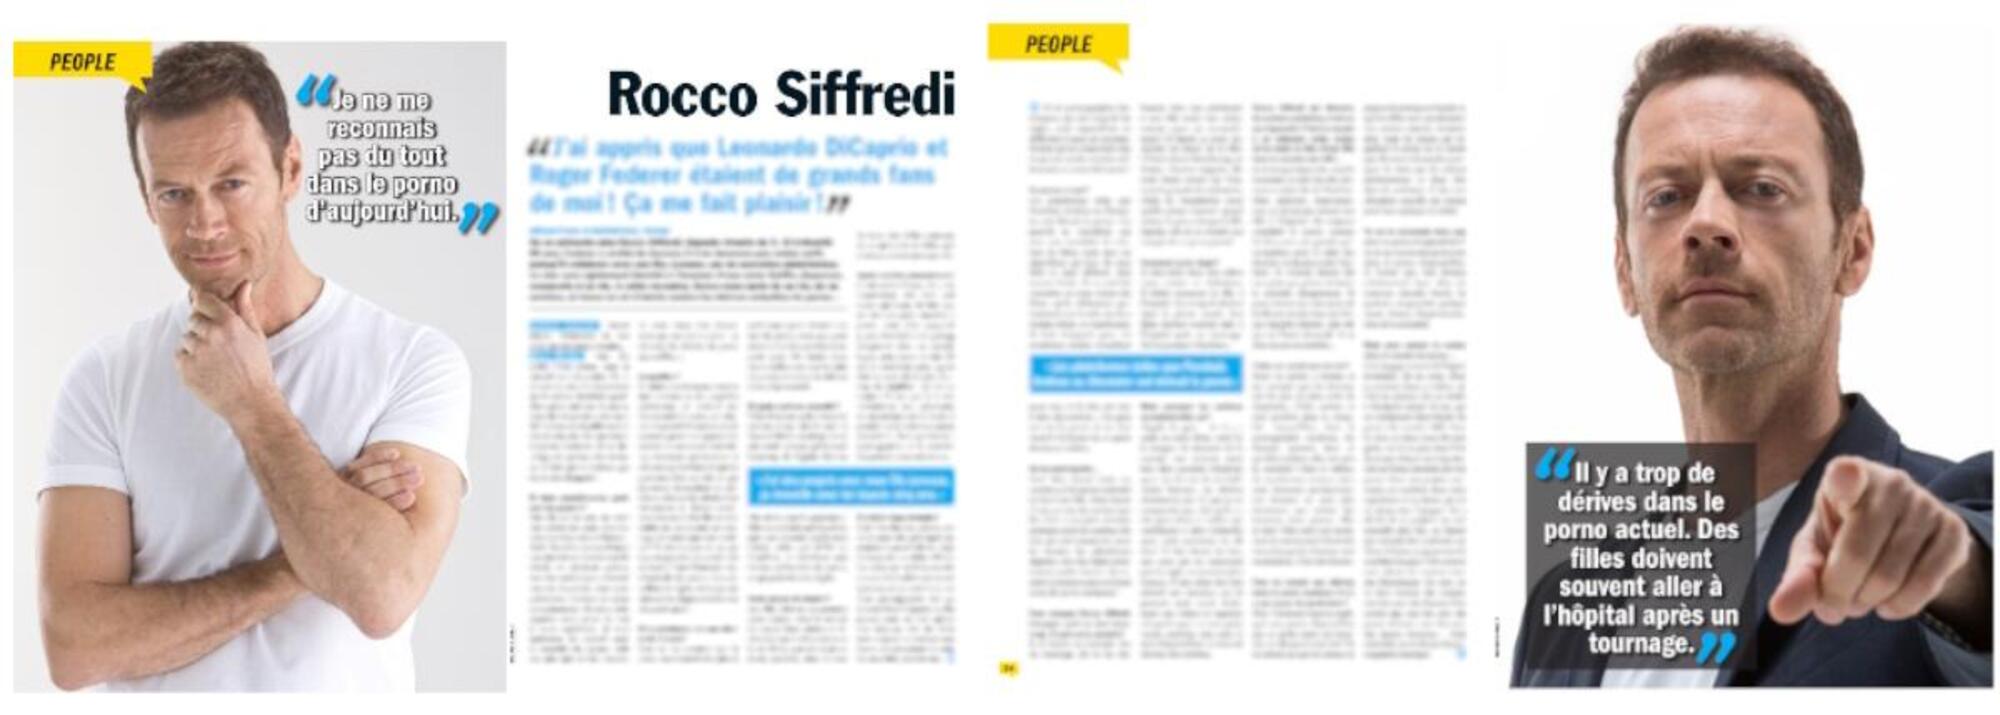 Rocco Siffredi intervistato in Francia